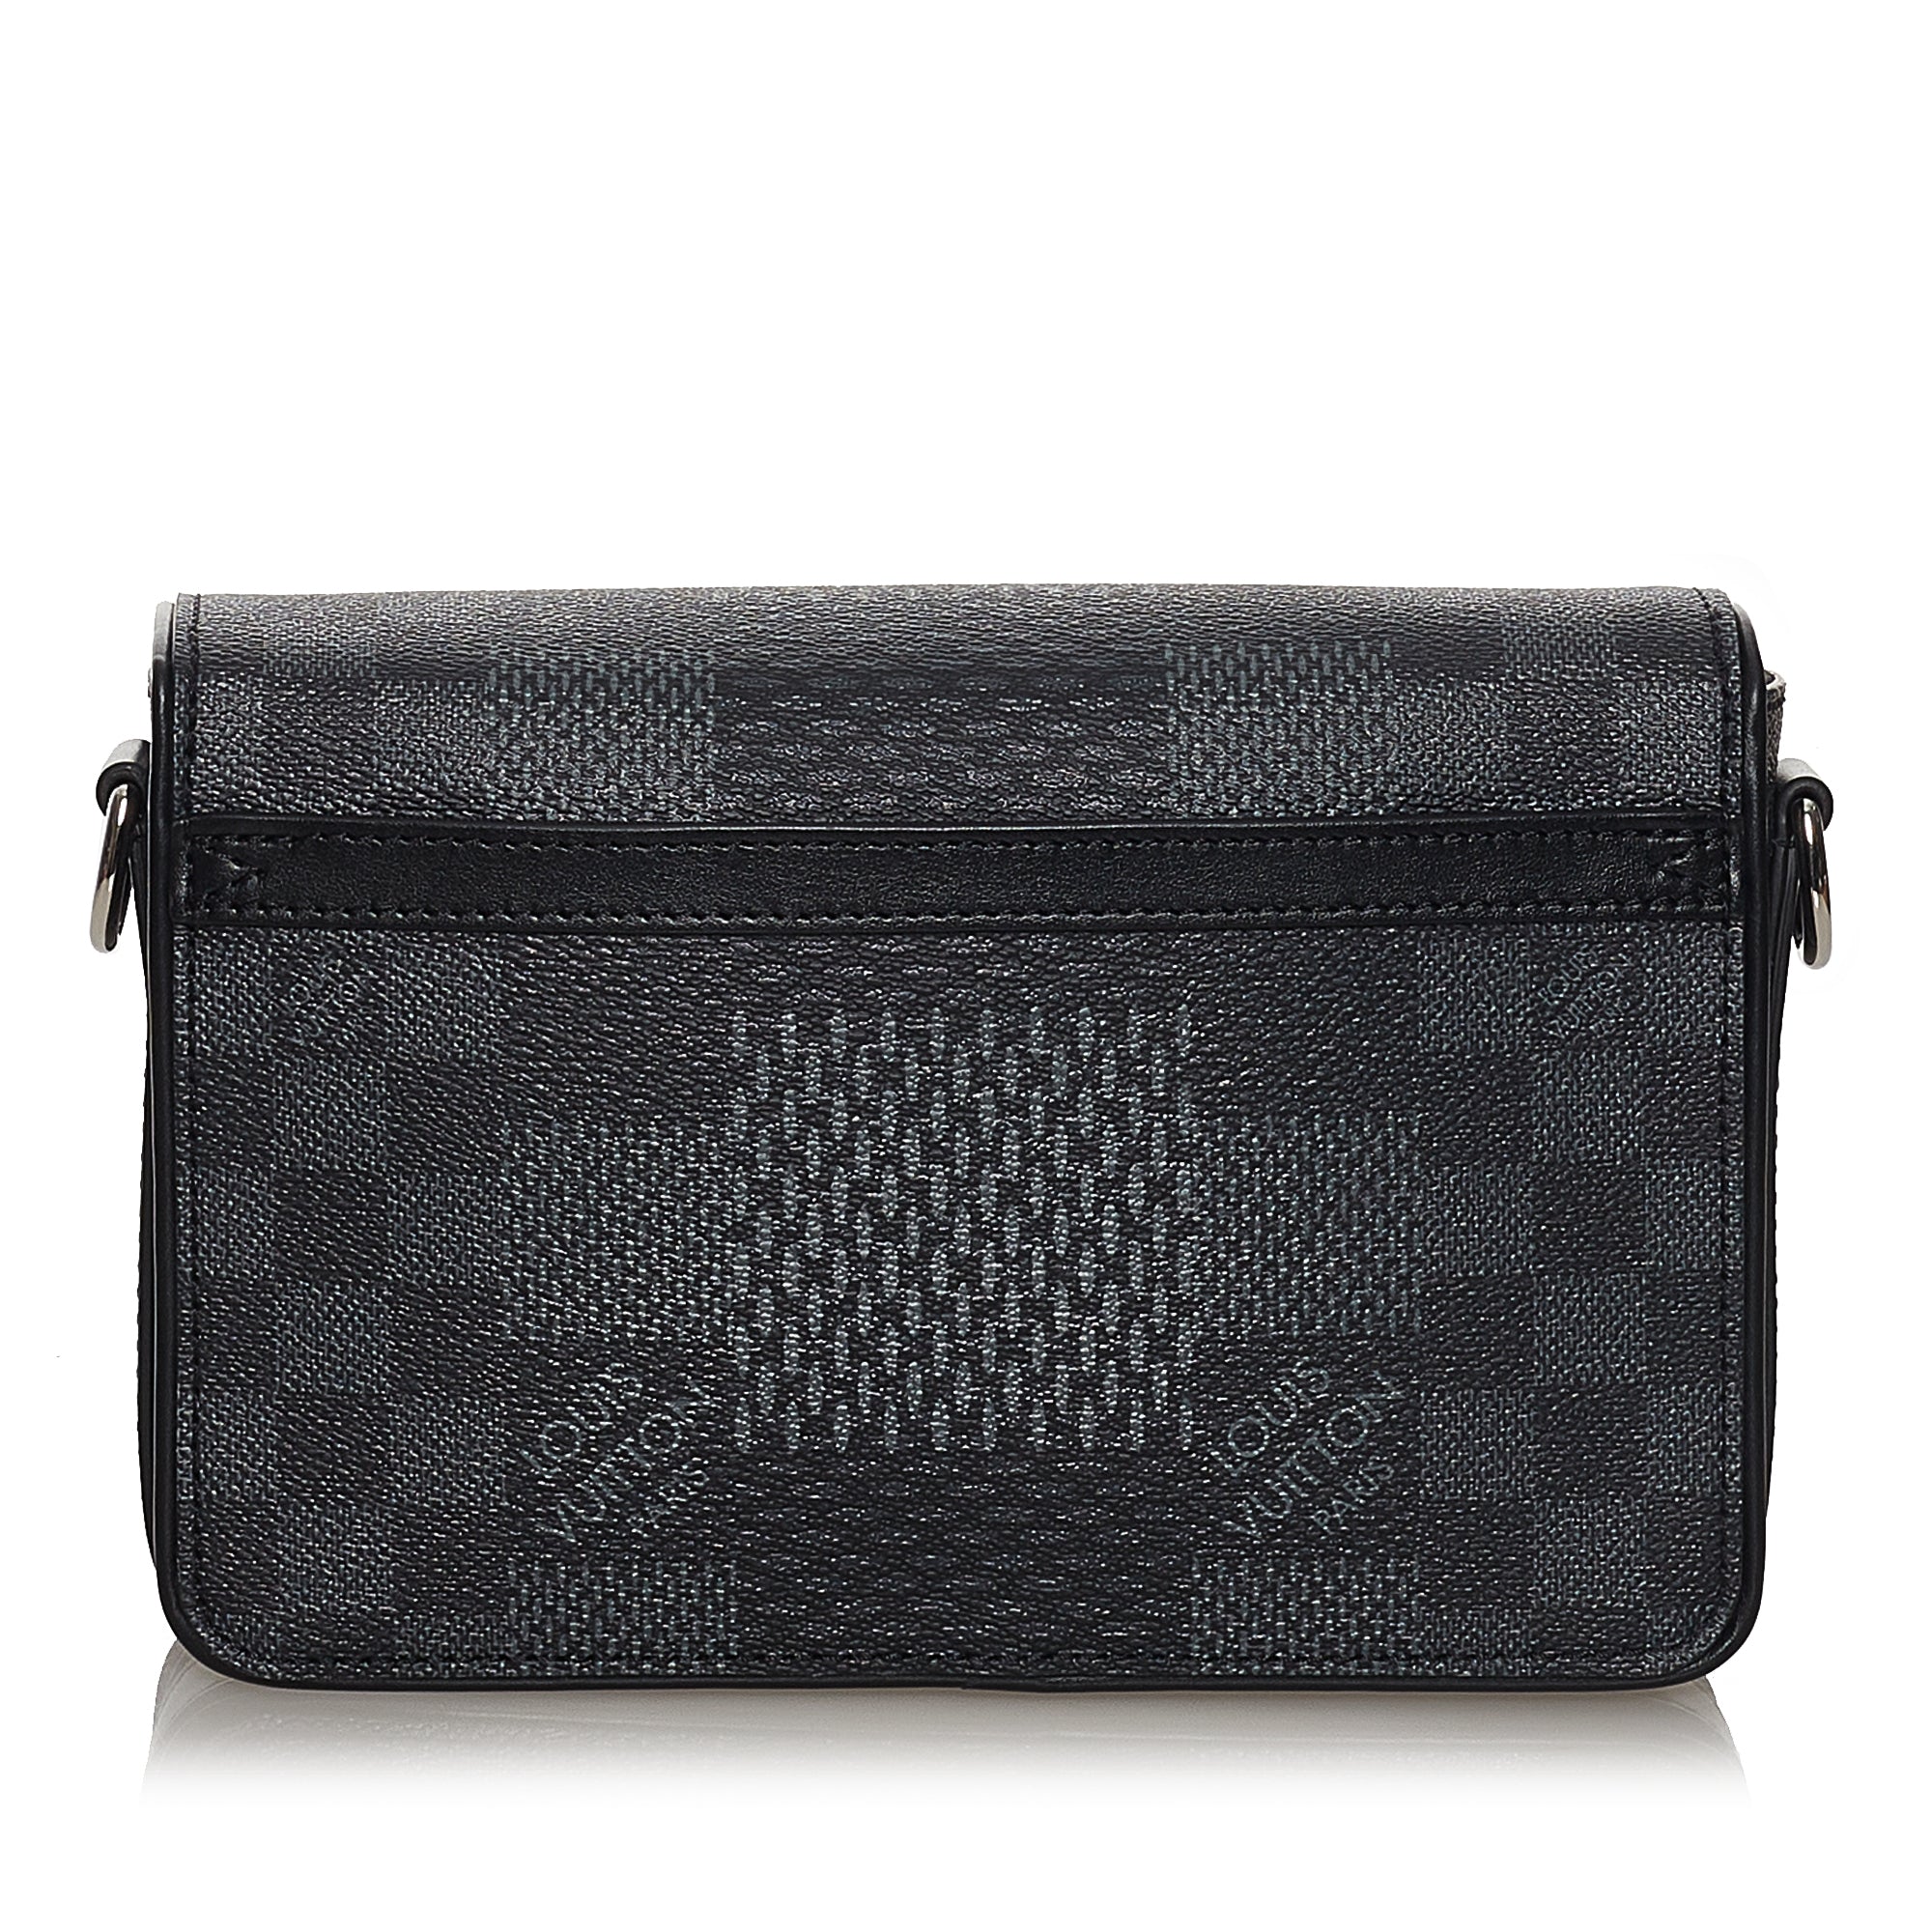 Louis Vuitton Studio Messenger Bag Limited Edition Damier Graphite 3d  Auction